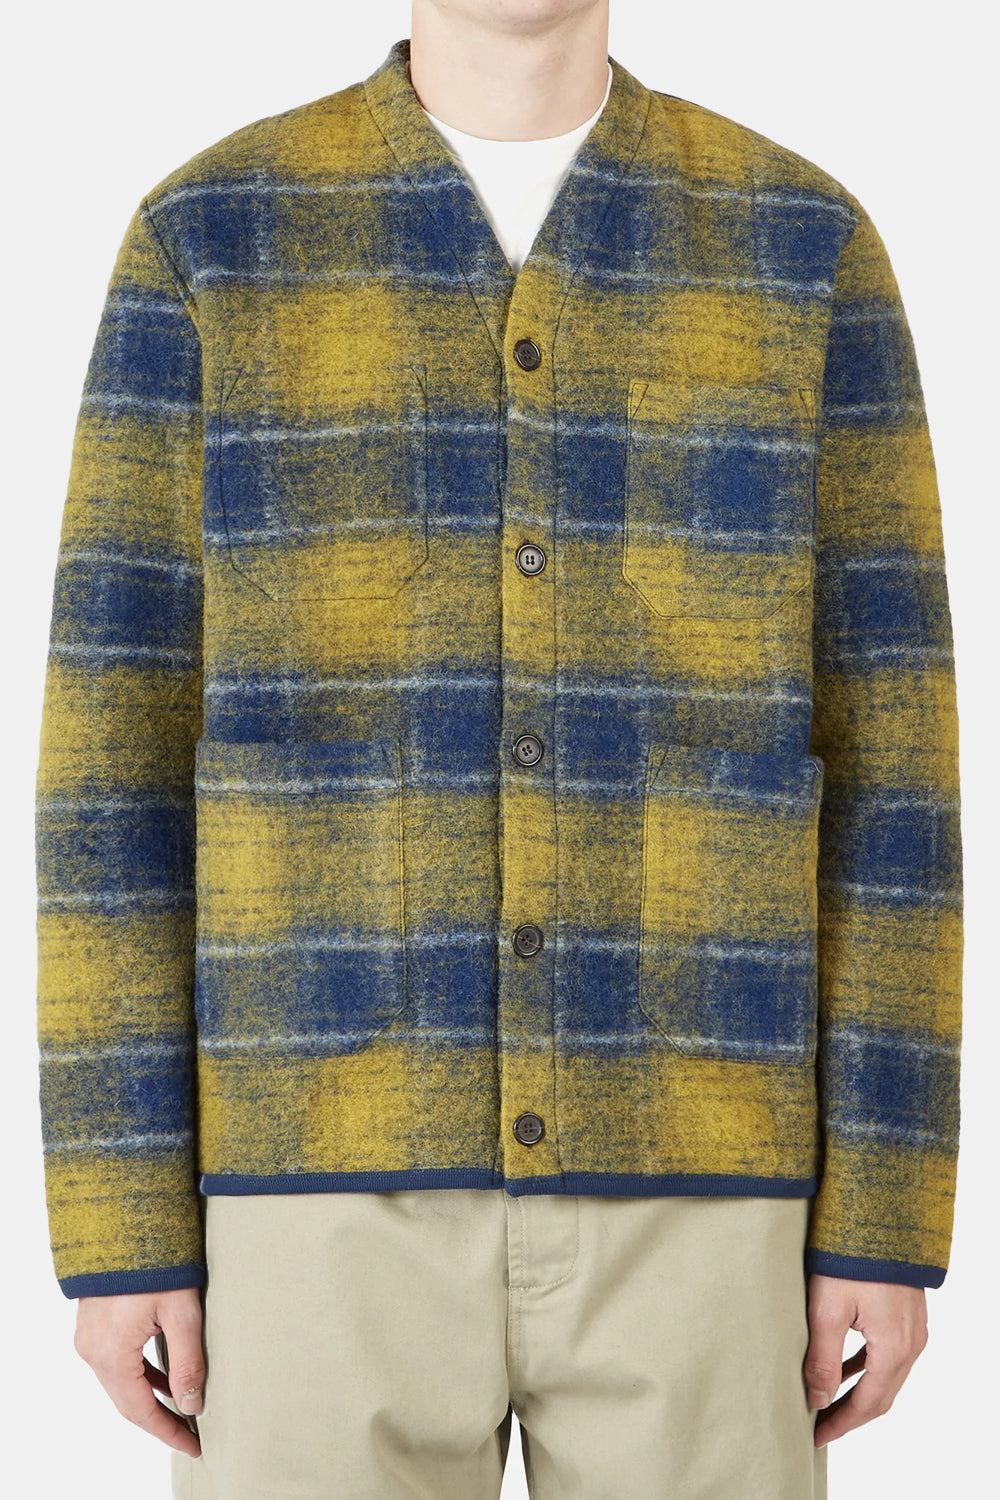 Universal Works Austin Wool Fleece (Yellow) | Number Six